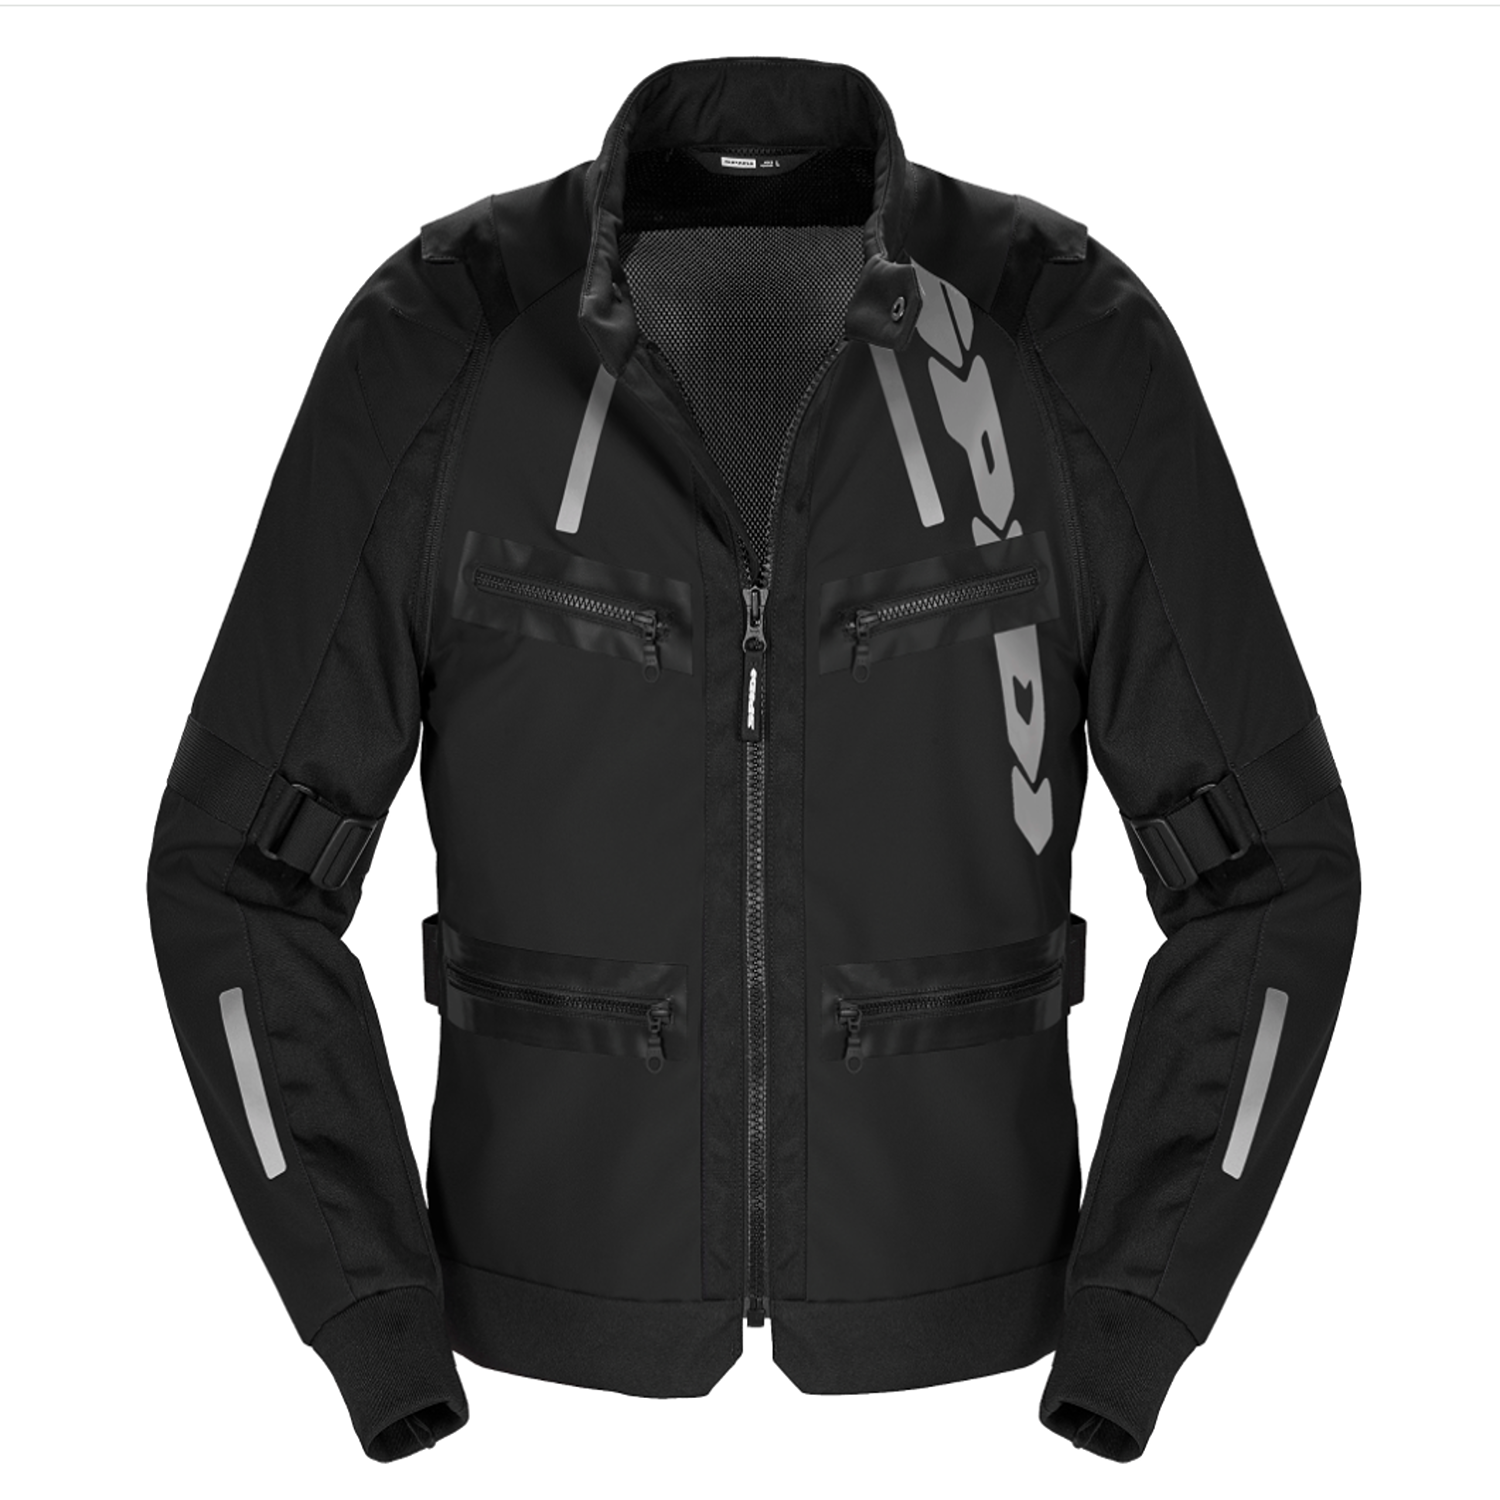 Image of Spidi Enduro Pro Jacket Black Size 3XL ID 8030161485042